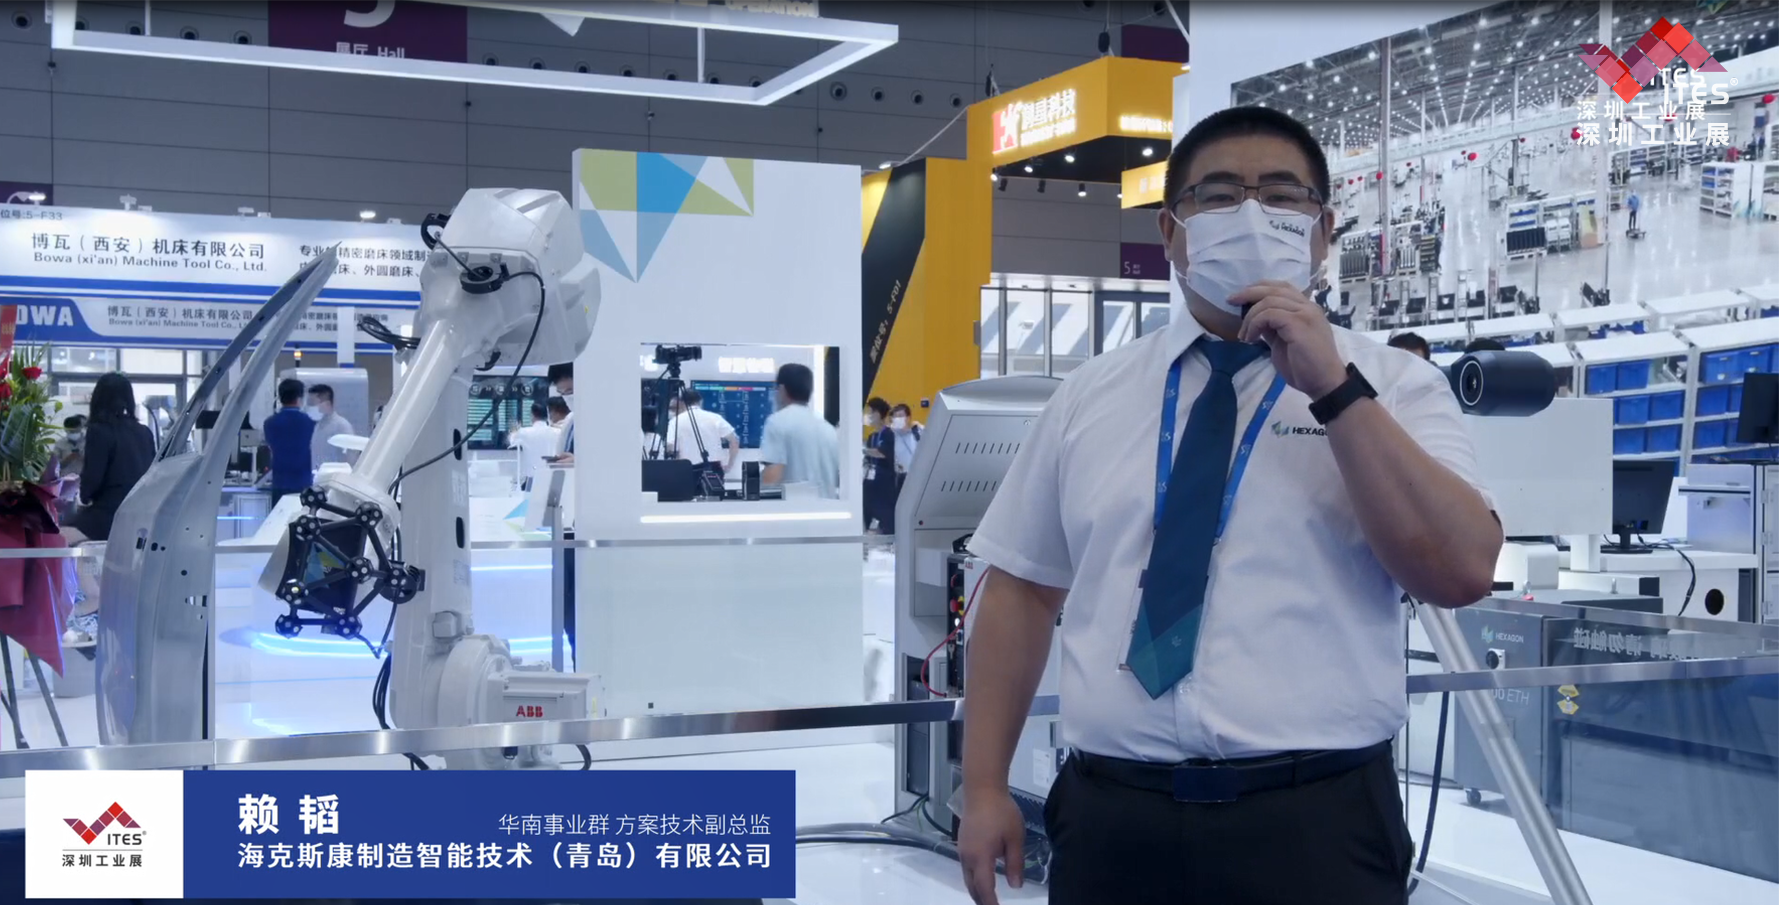 海克斯康在2022 ITES深圳工业展现场带来全新双目视觉扫描解决方案，让我们一起洞悉工业技术新趋势。